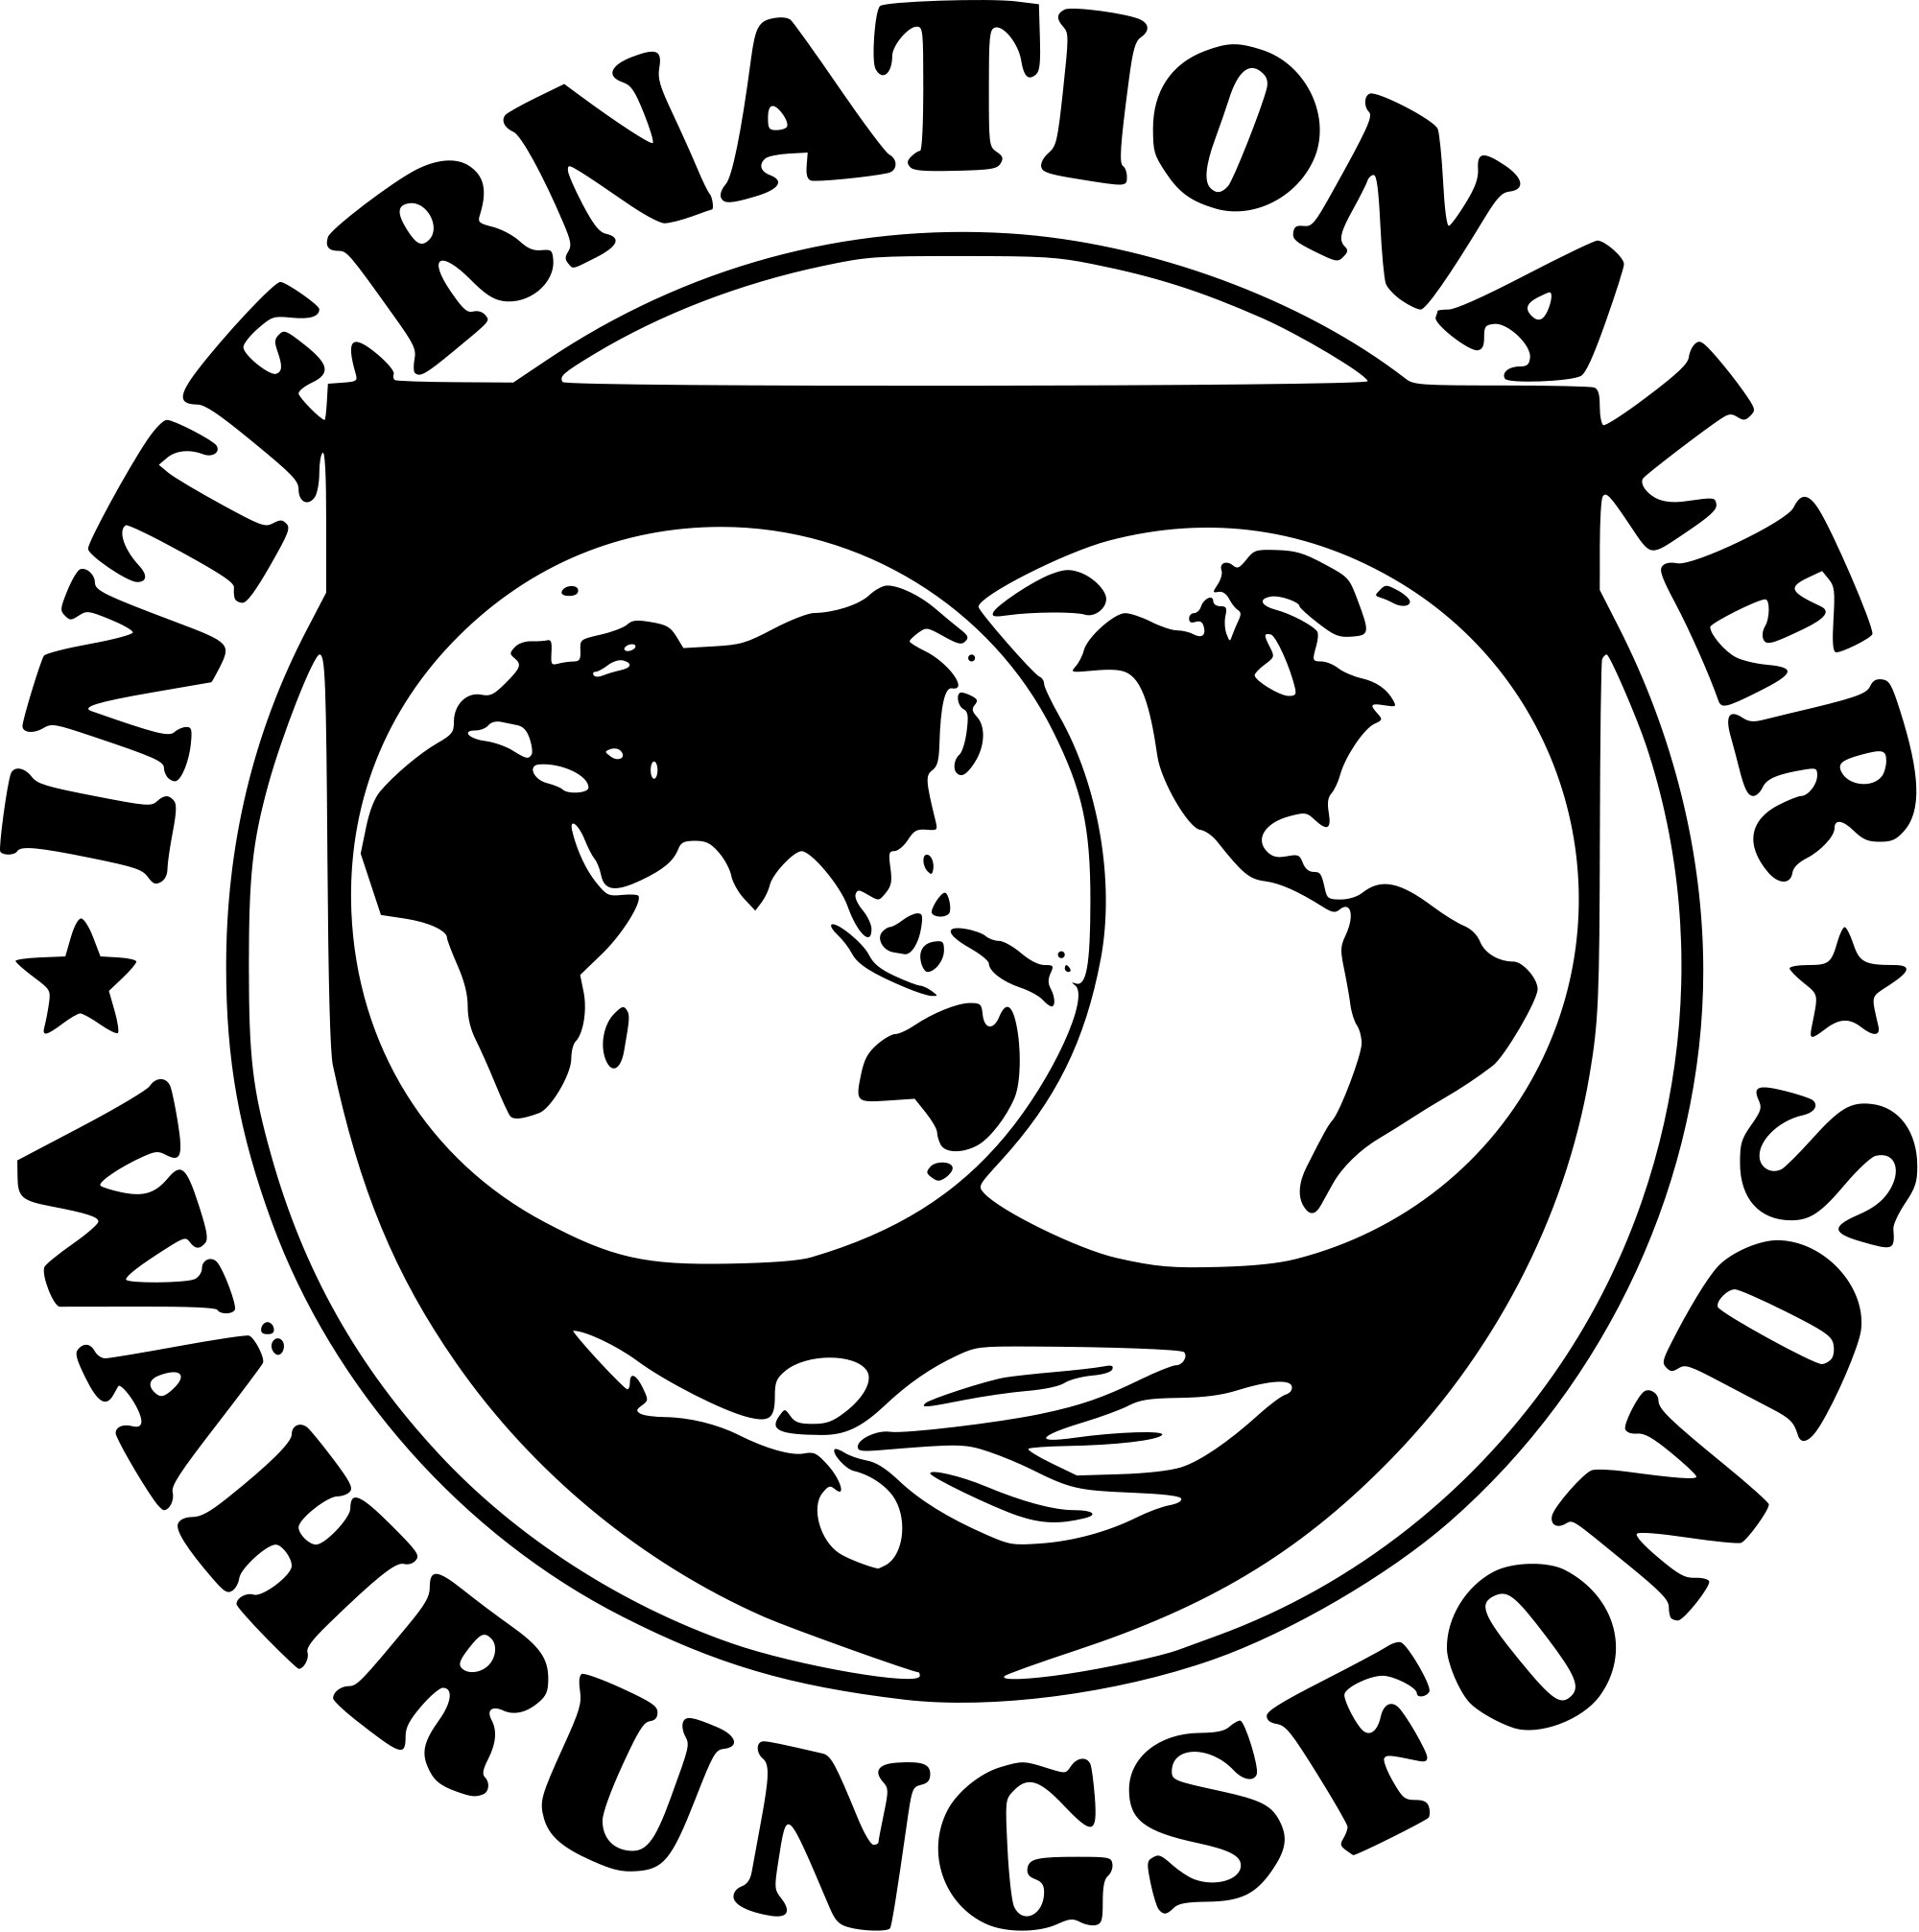 Мировой валютный фонд. МВФ эмблема. Международный валютный фонд (МВФ). Международный валютный фонд флаг. Герб МВФ.